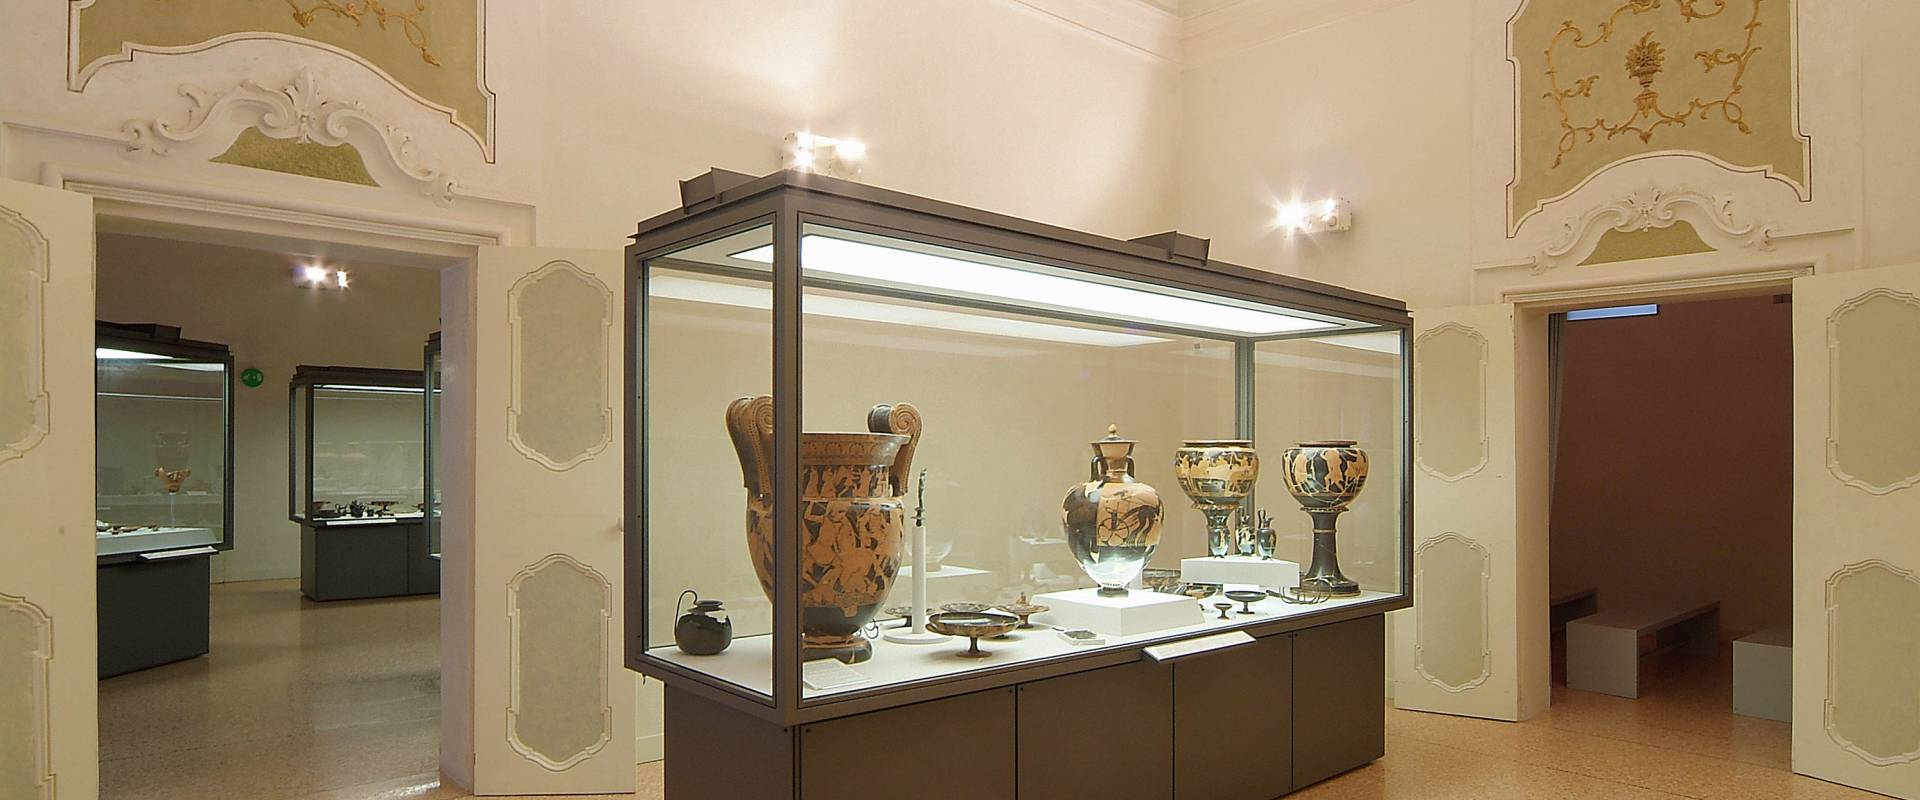 Museo Archeologico. Vetrine foto di baraldi